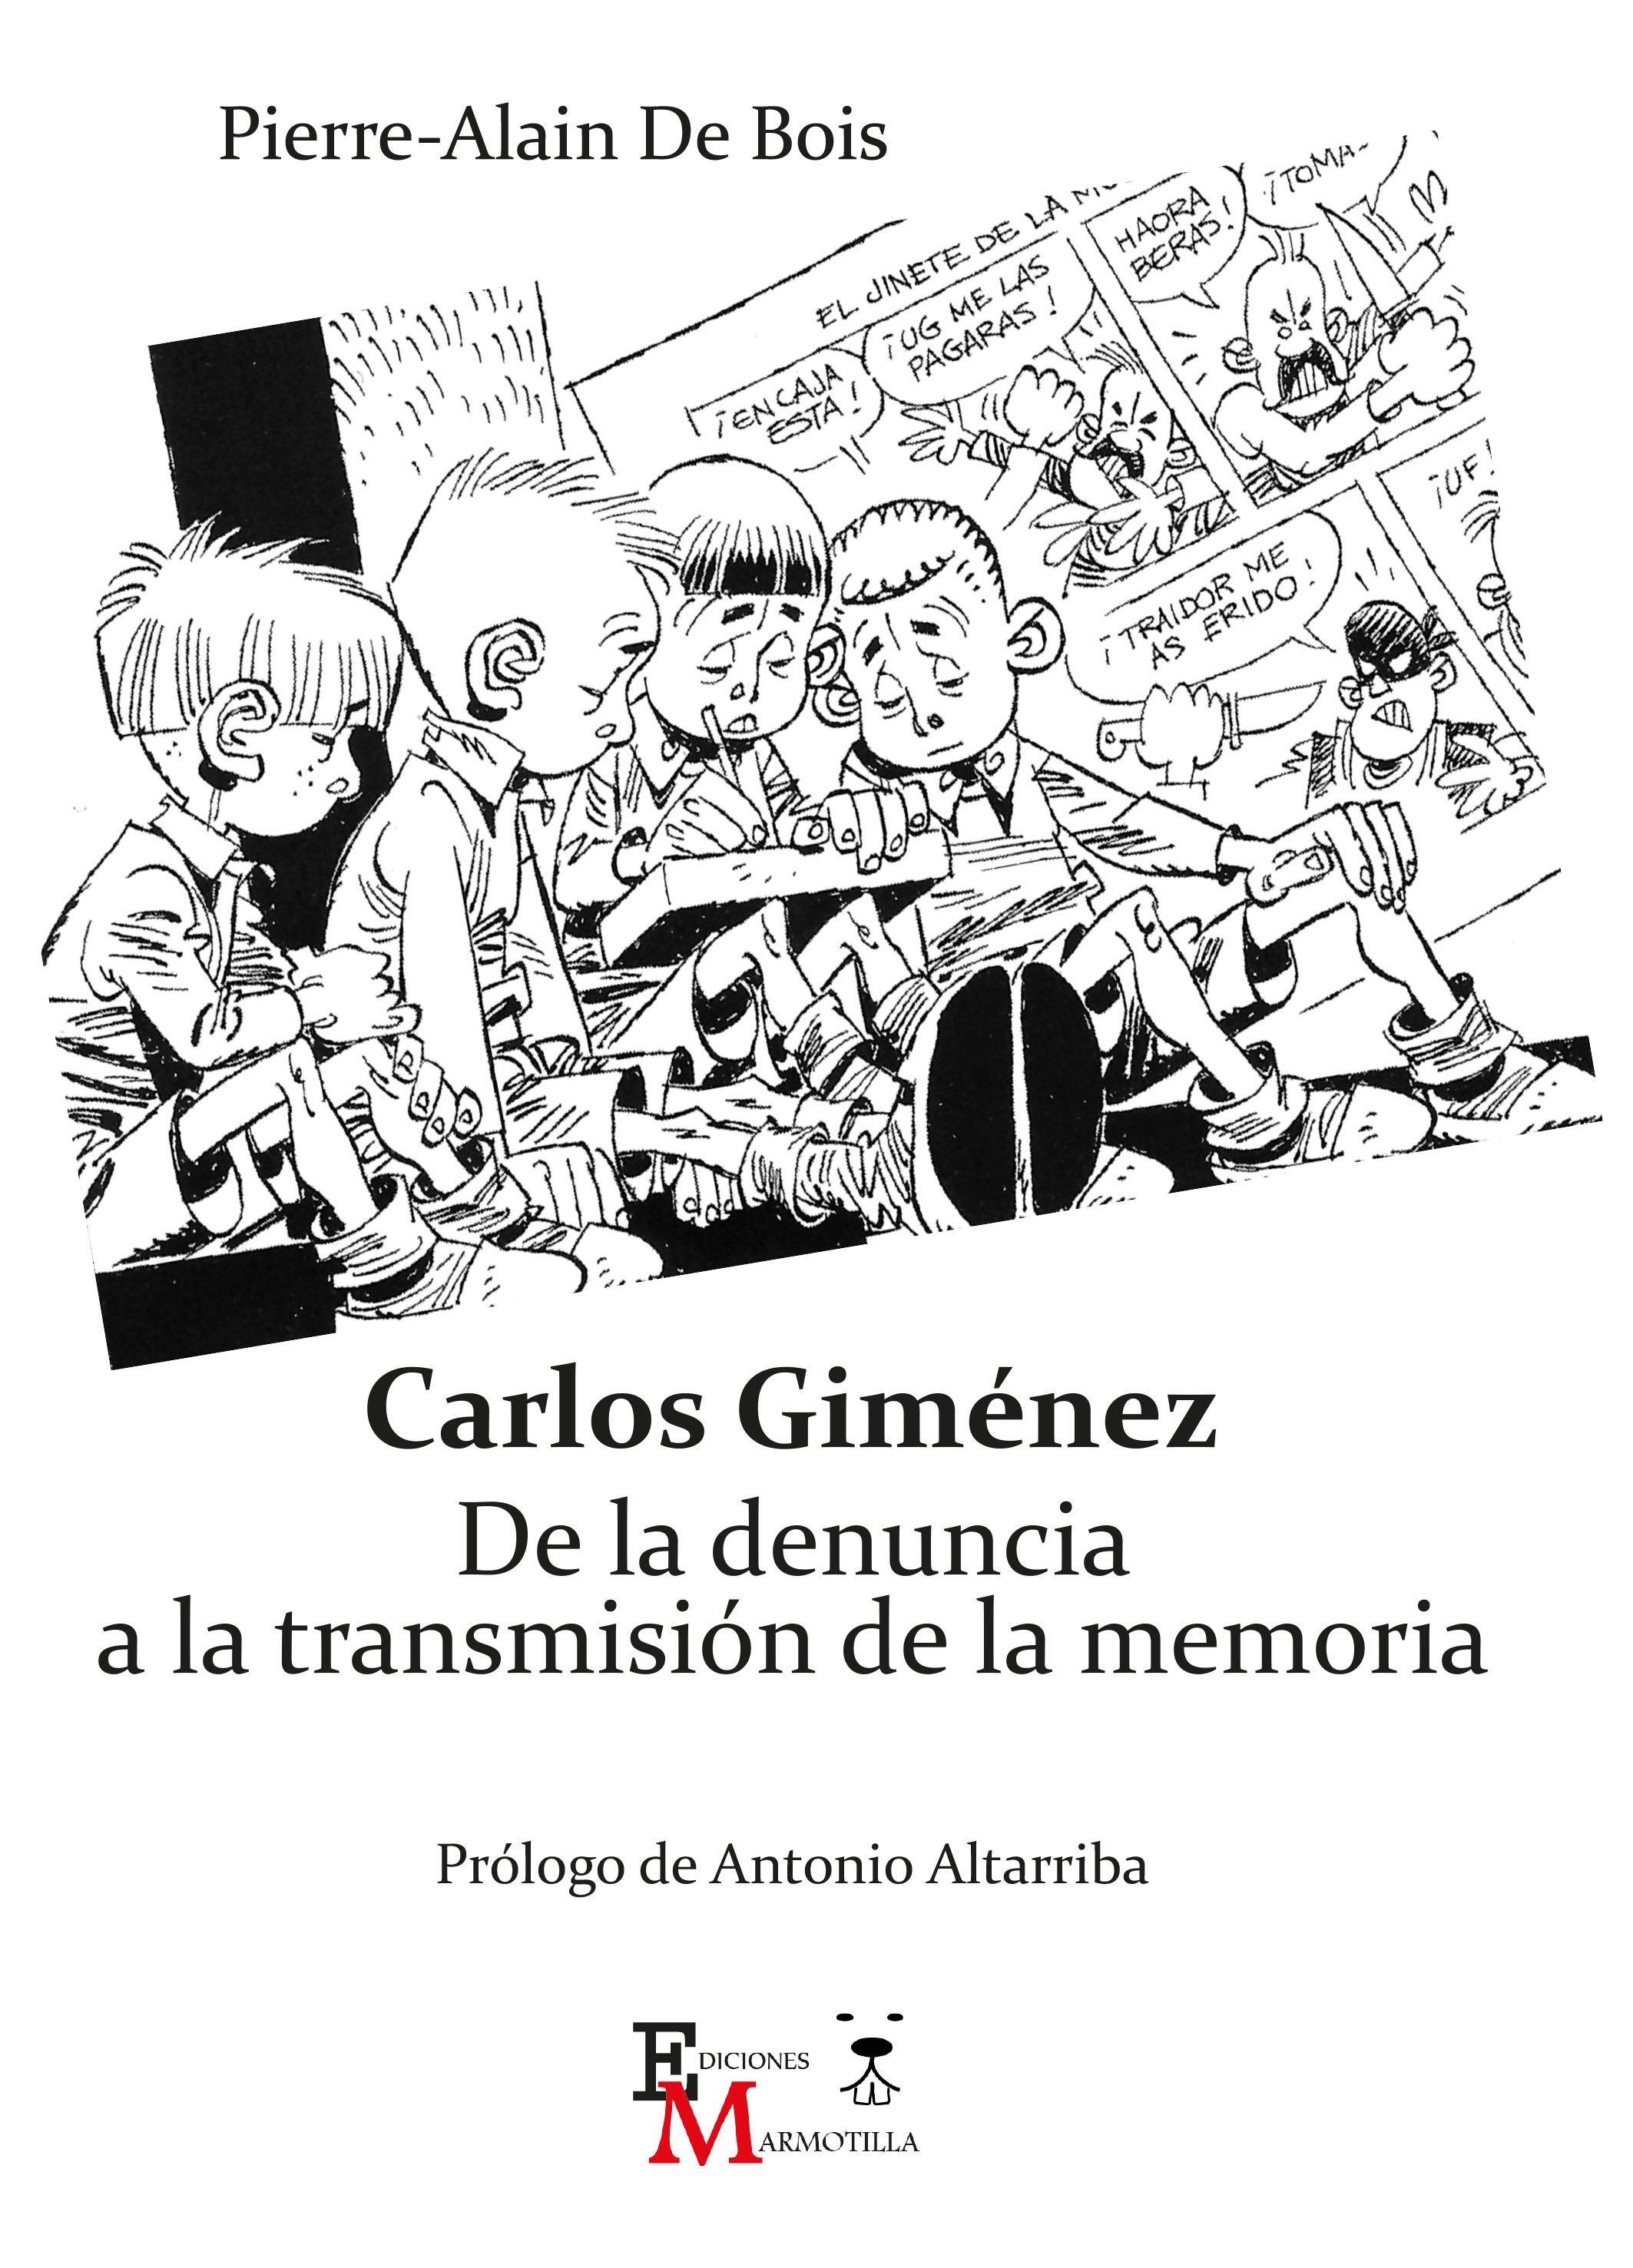 Carlos Giménez. De la denuncia a la transmisión de la memoria. 